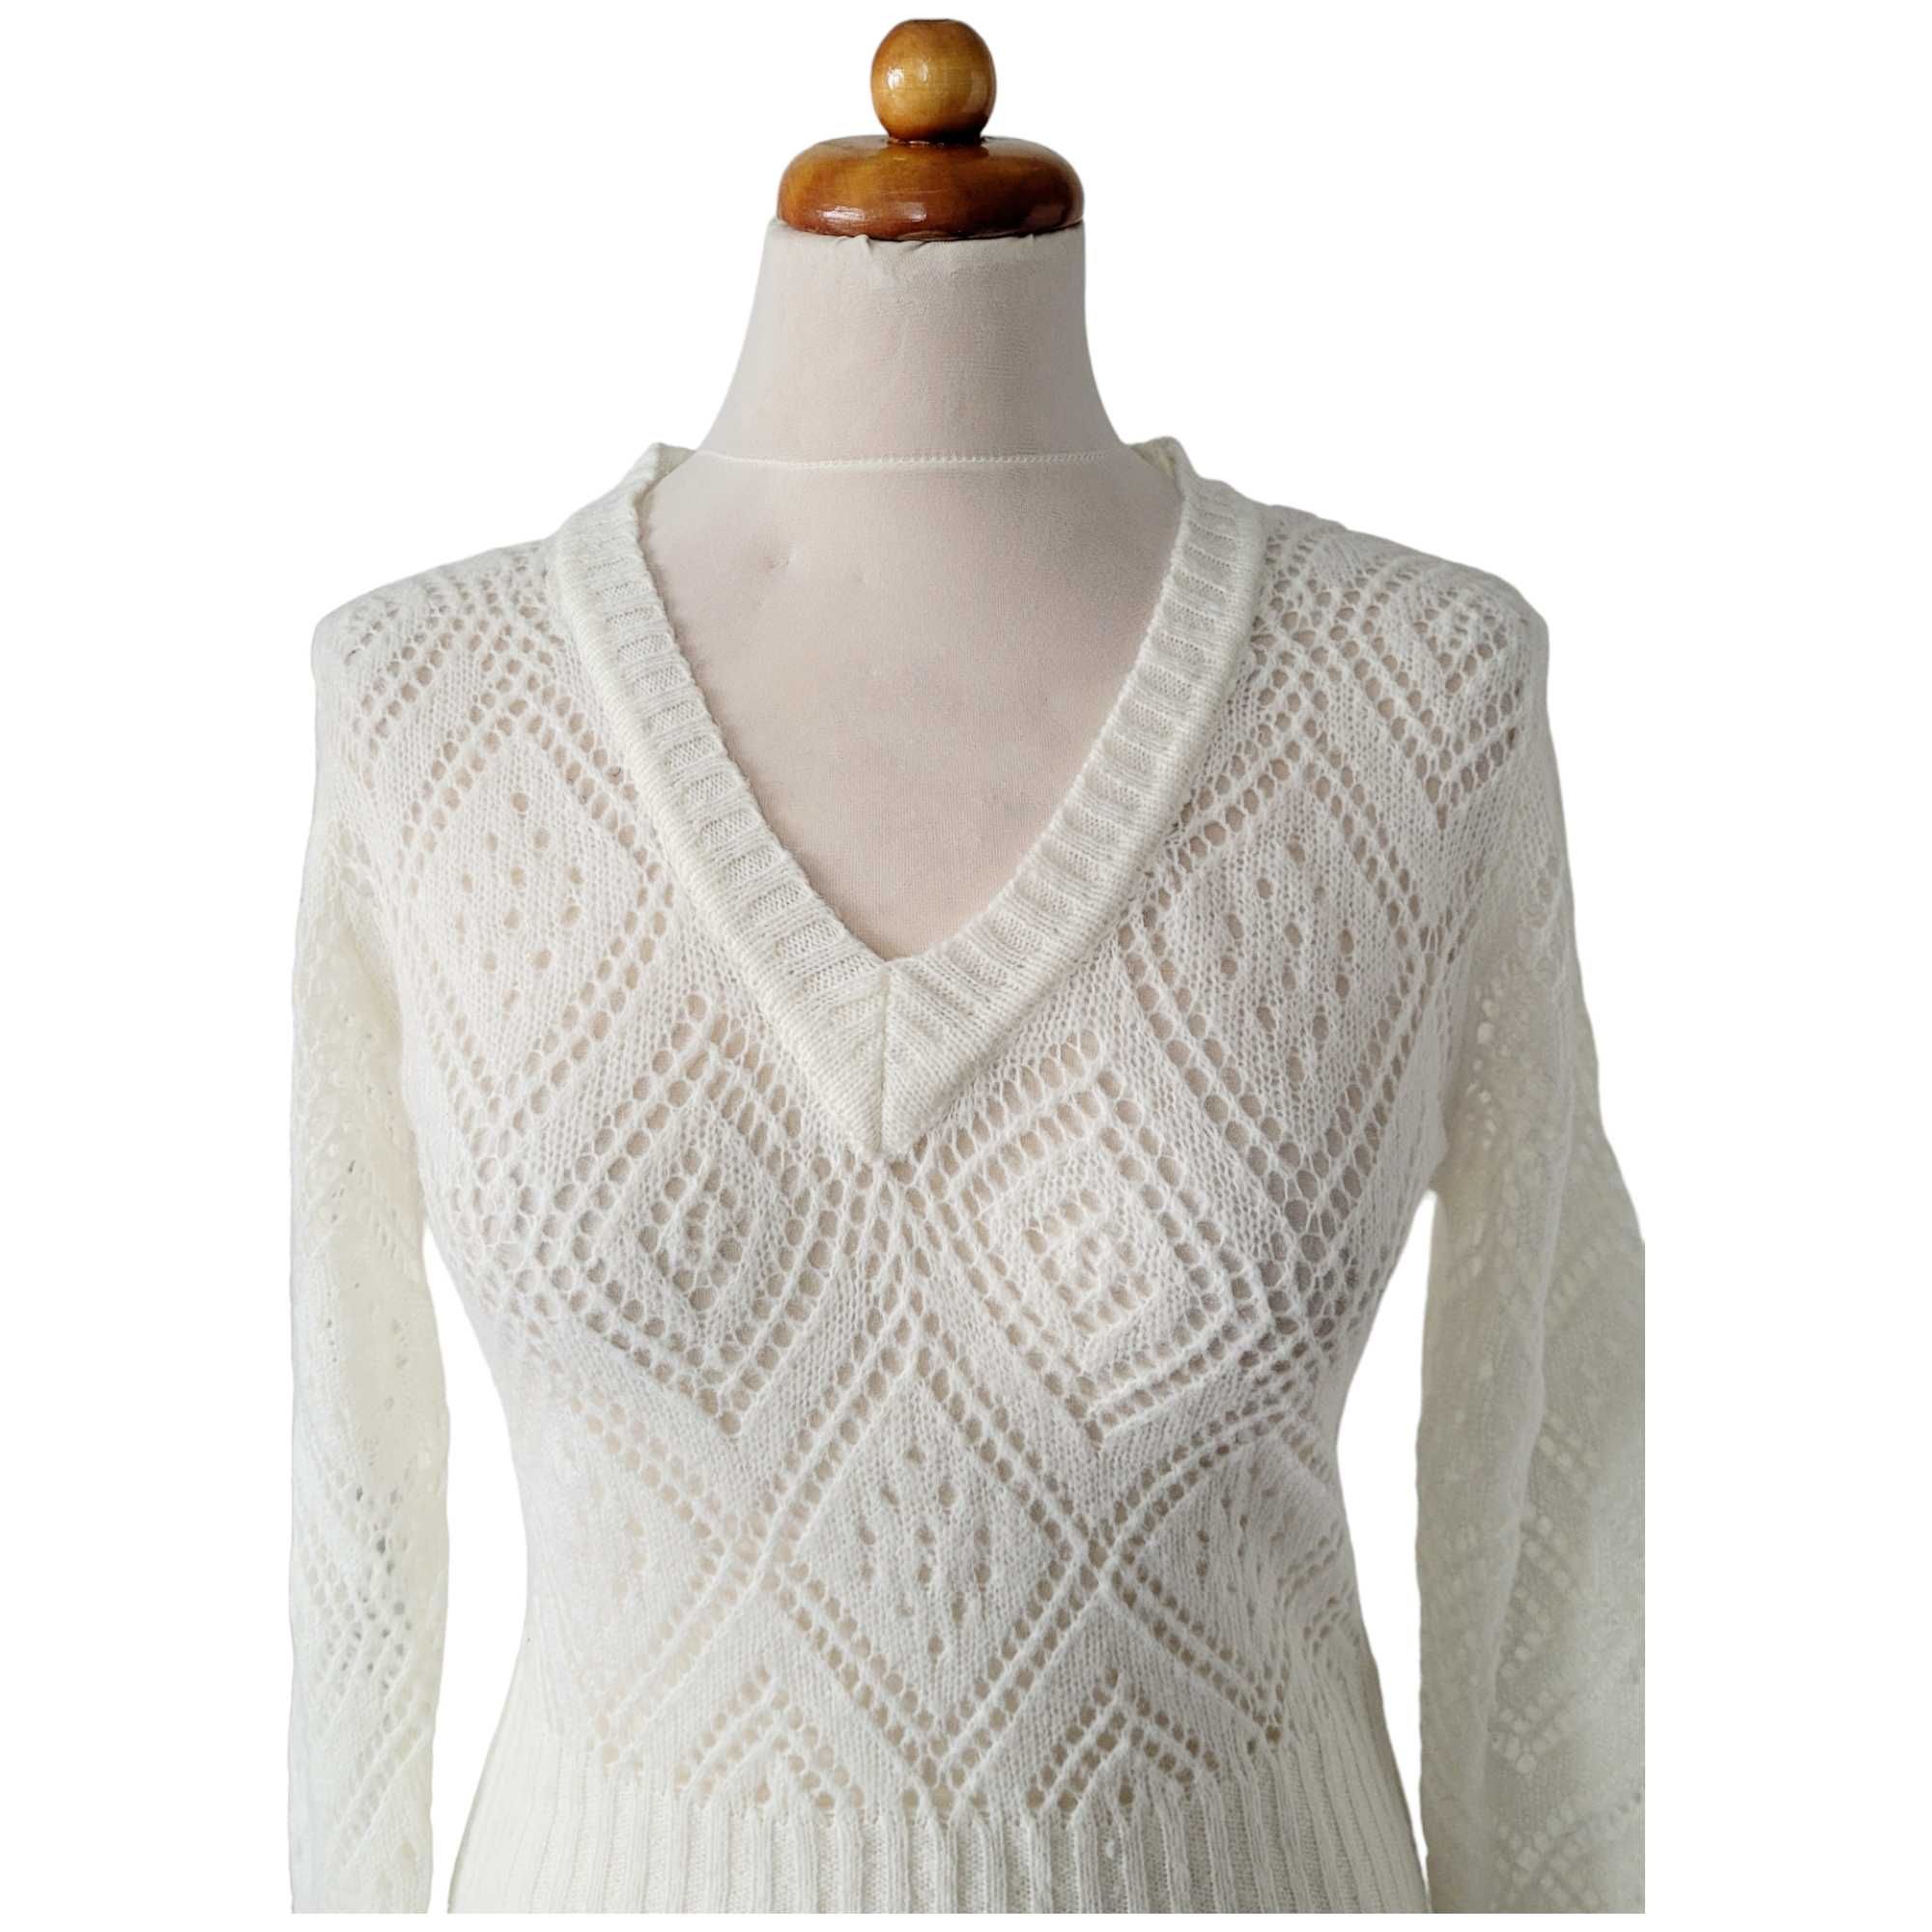 Kremowy ażurowy sweter damski 55% kaszmir romby angelcore bluzka